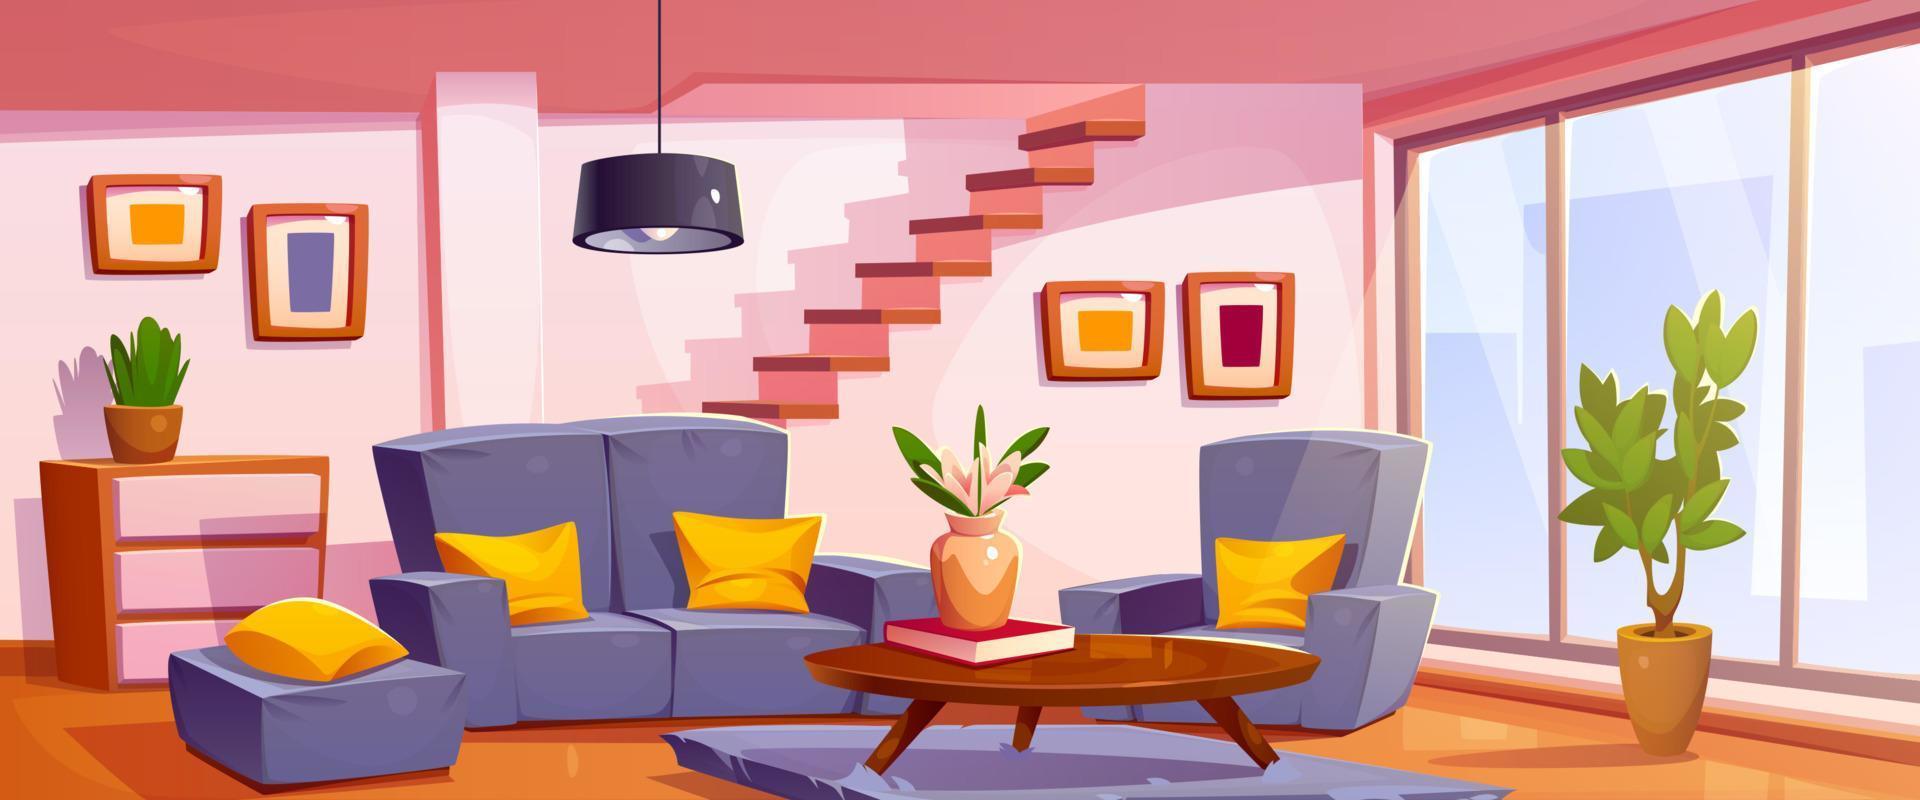 dibujos animados vivo habitación interior diseño vector